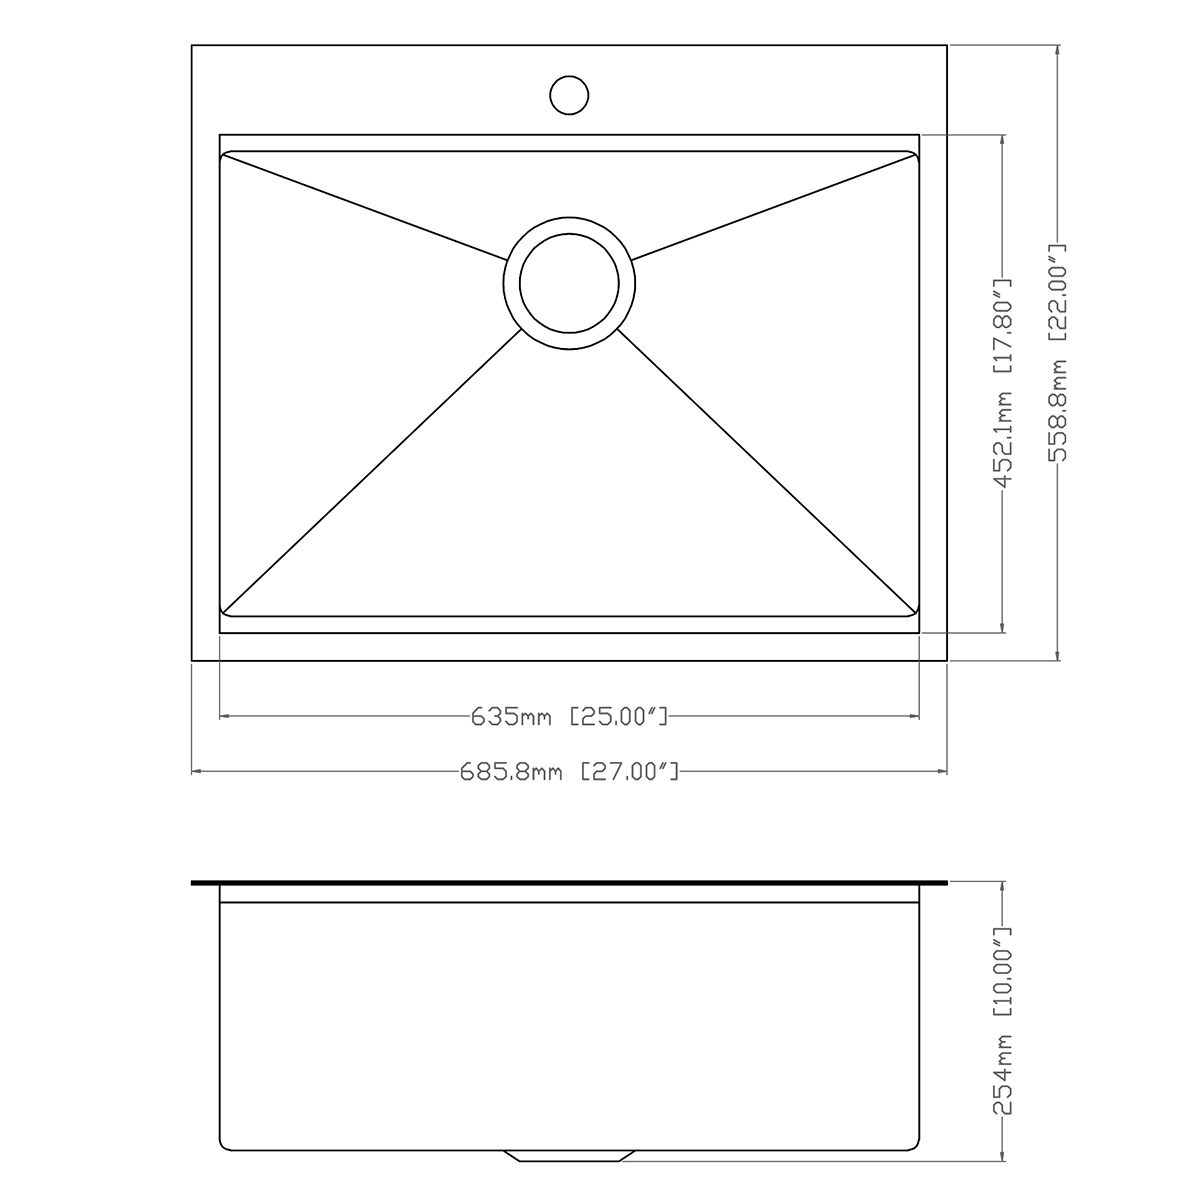 Handgefertigte Dual-Mount-Topmount-Drop-In-UPC-Küchenspüle aus Edelstahl in Gunmetal-Schwarz mit Leiste